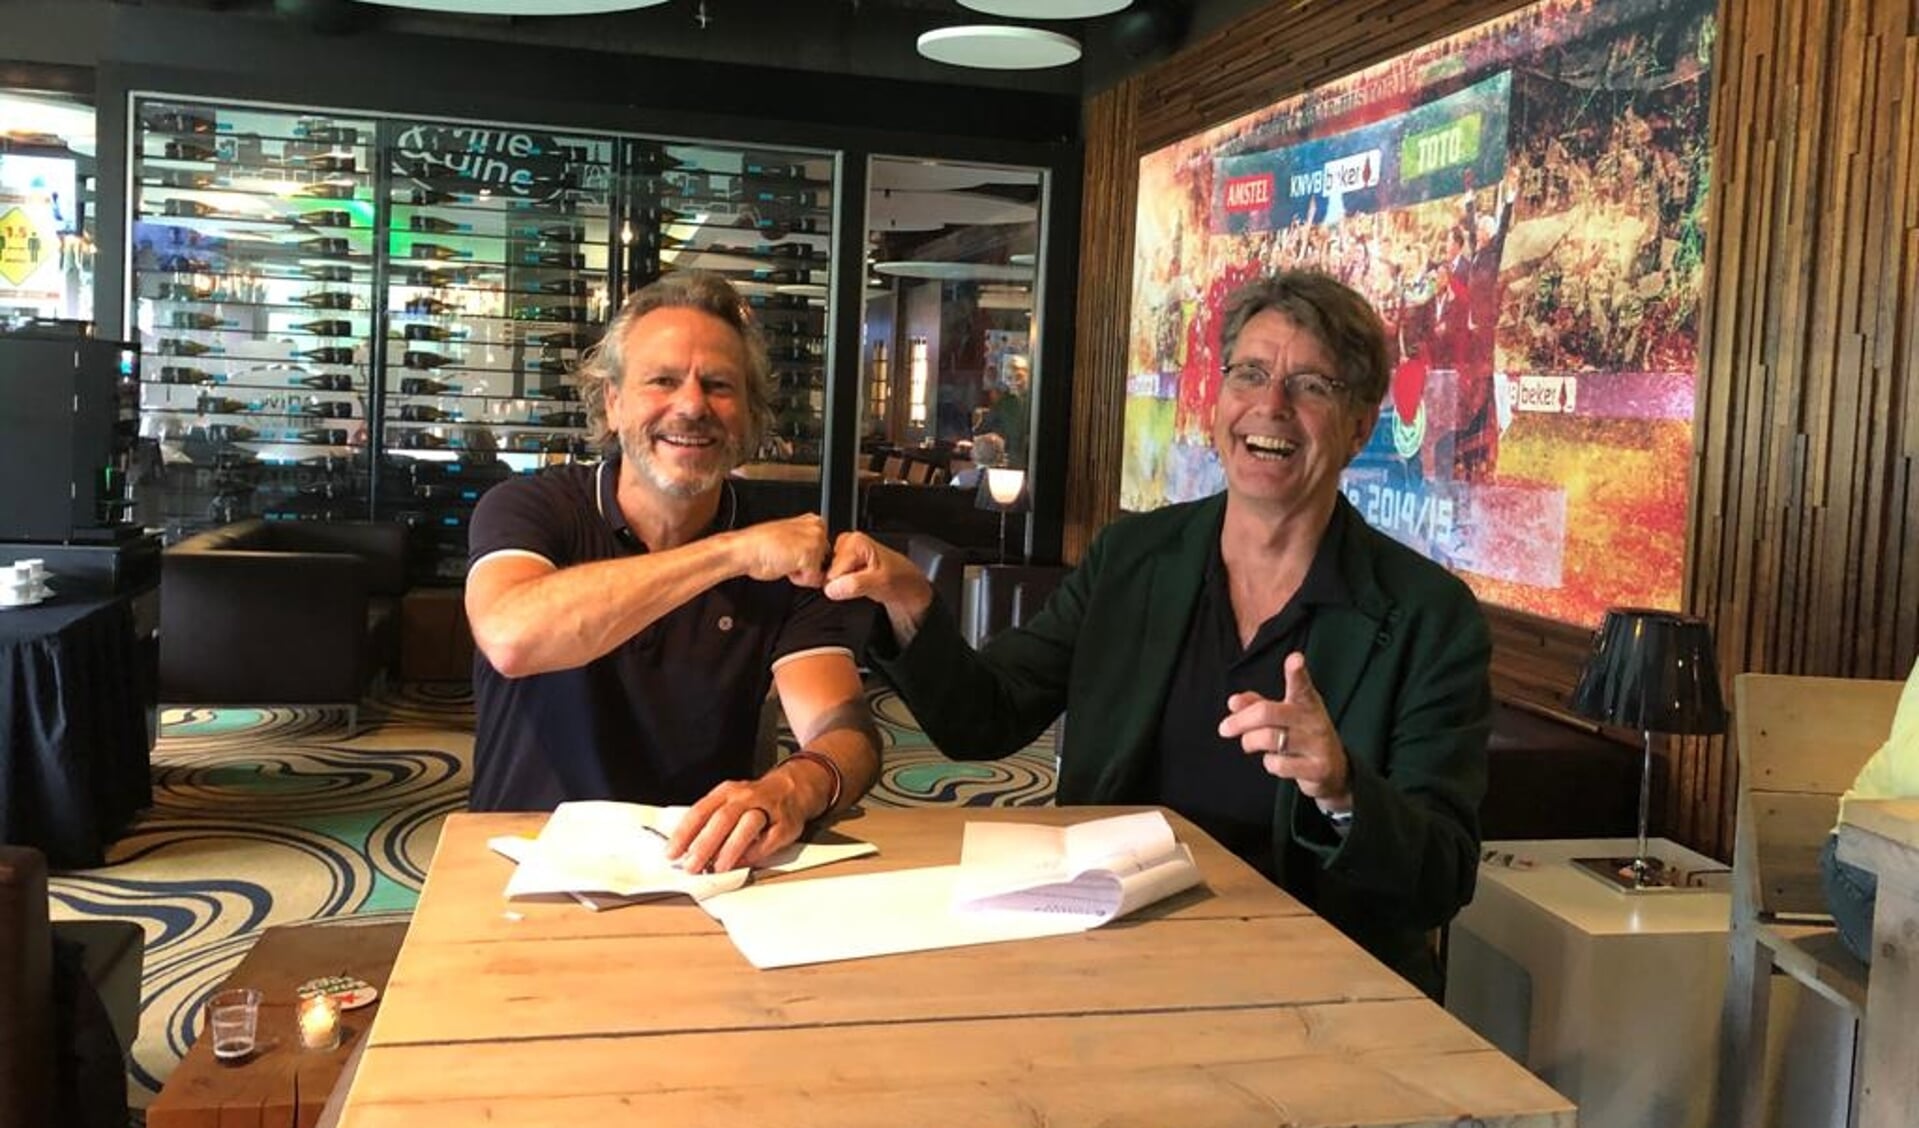 Bestuursvoorzitters Carlo Segers (Friesland College) en Wim van de Pol (Noorderpoort) ondertekenen de samenwerkingsovereenkomst.